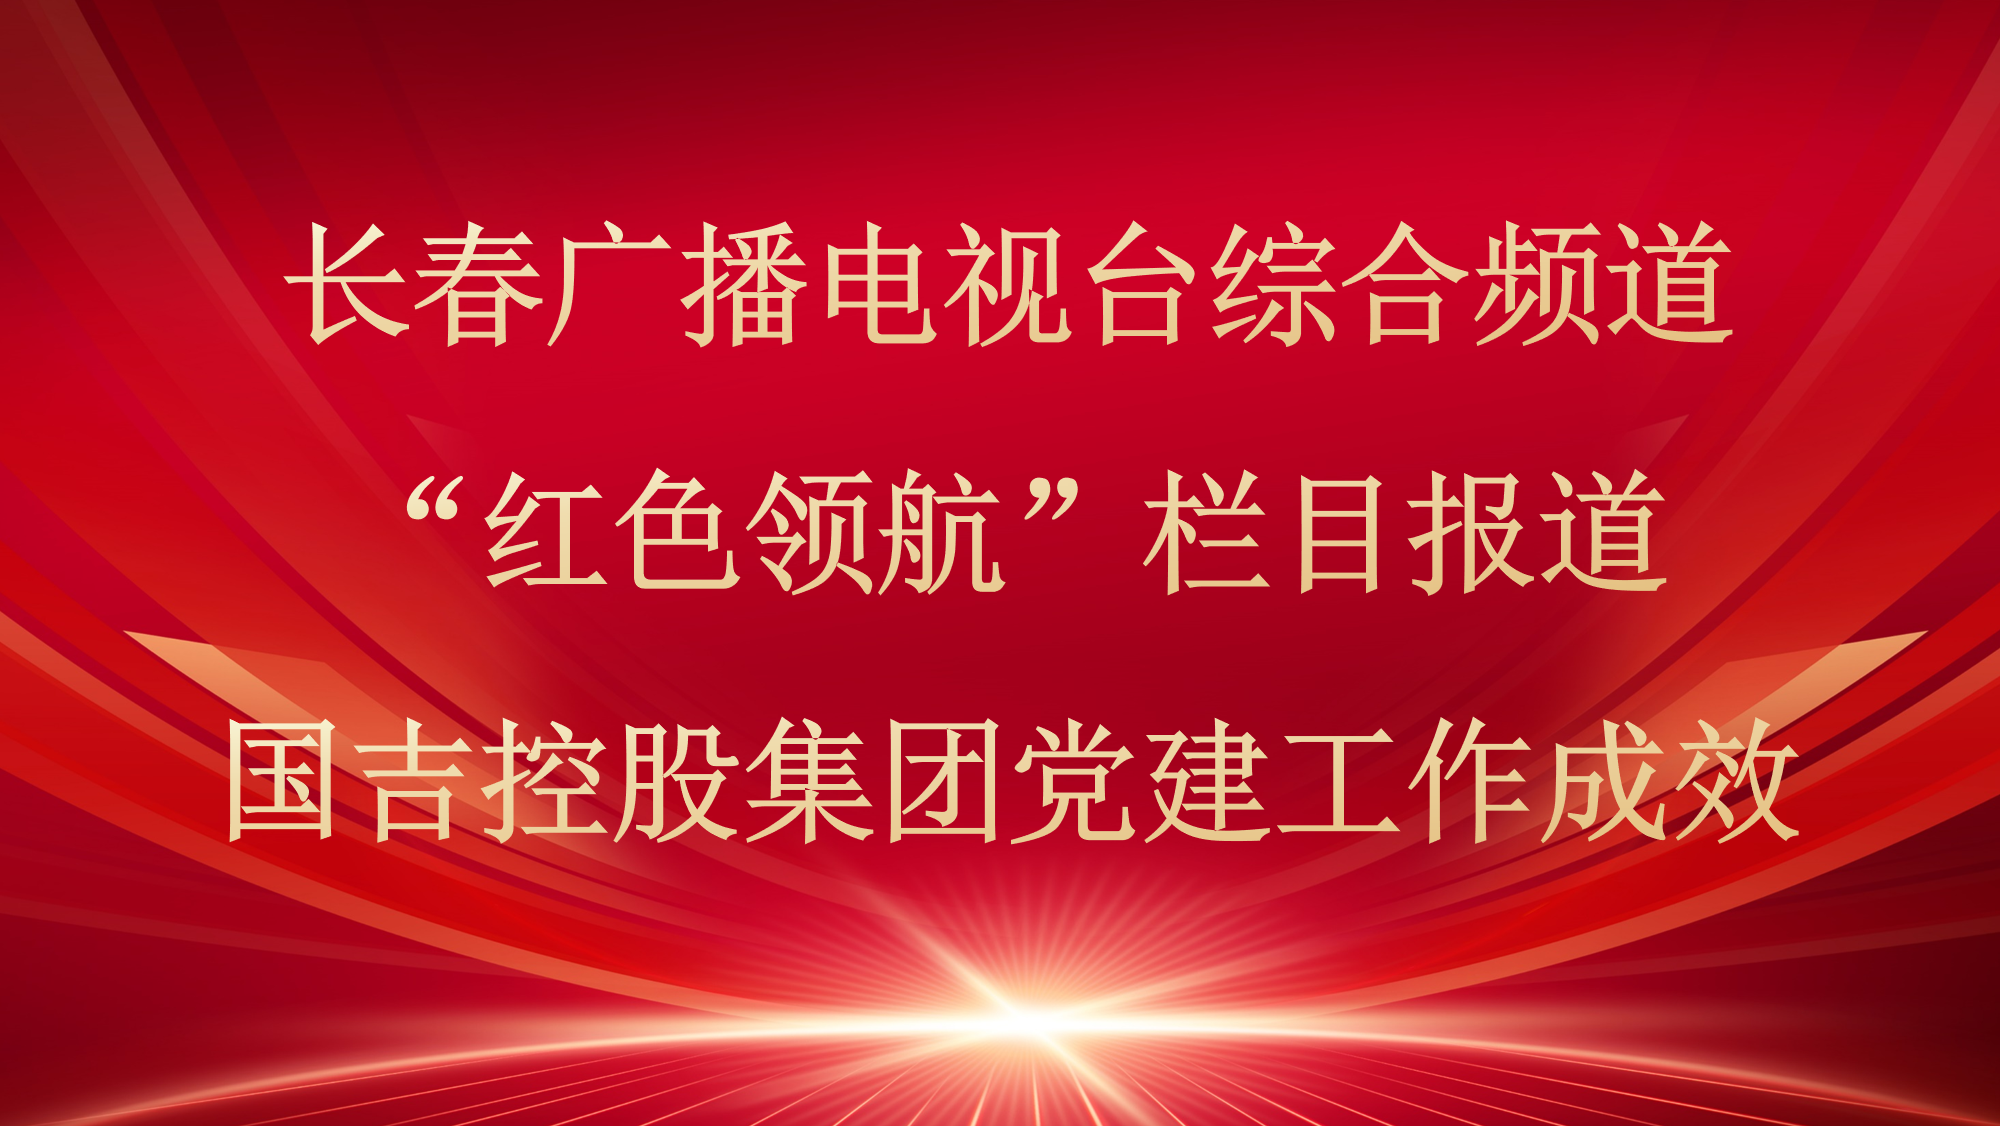 媒体播报丨长春广播电视台综合频道“红色领航”栏目报道国吉控股集团党建工作成效